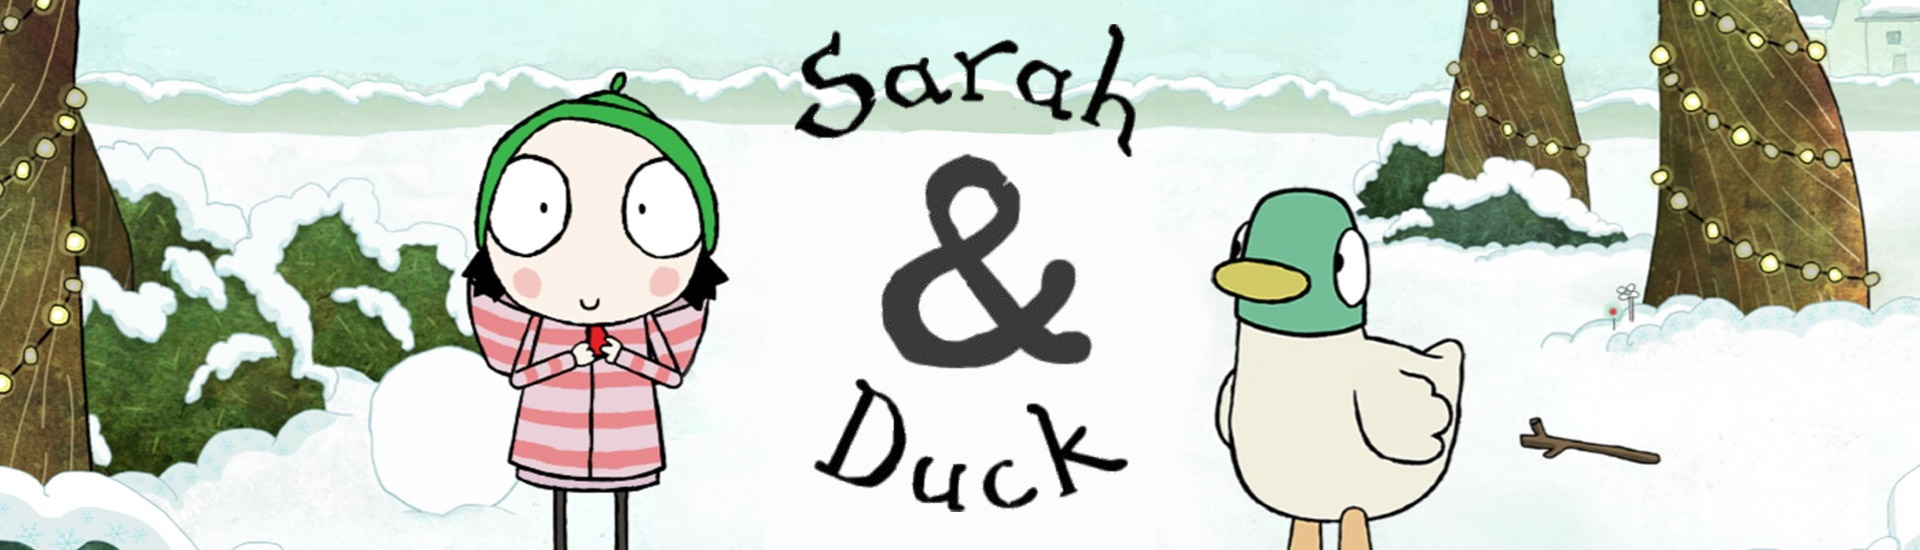 Sarah & Duck